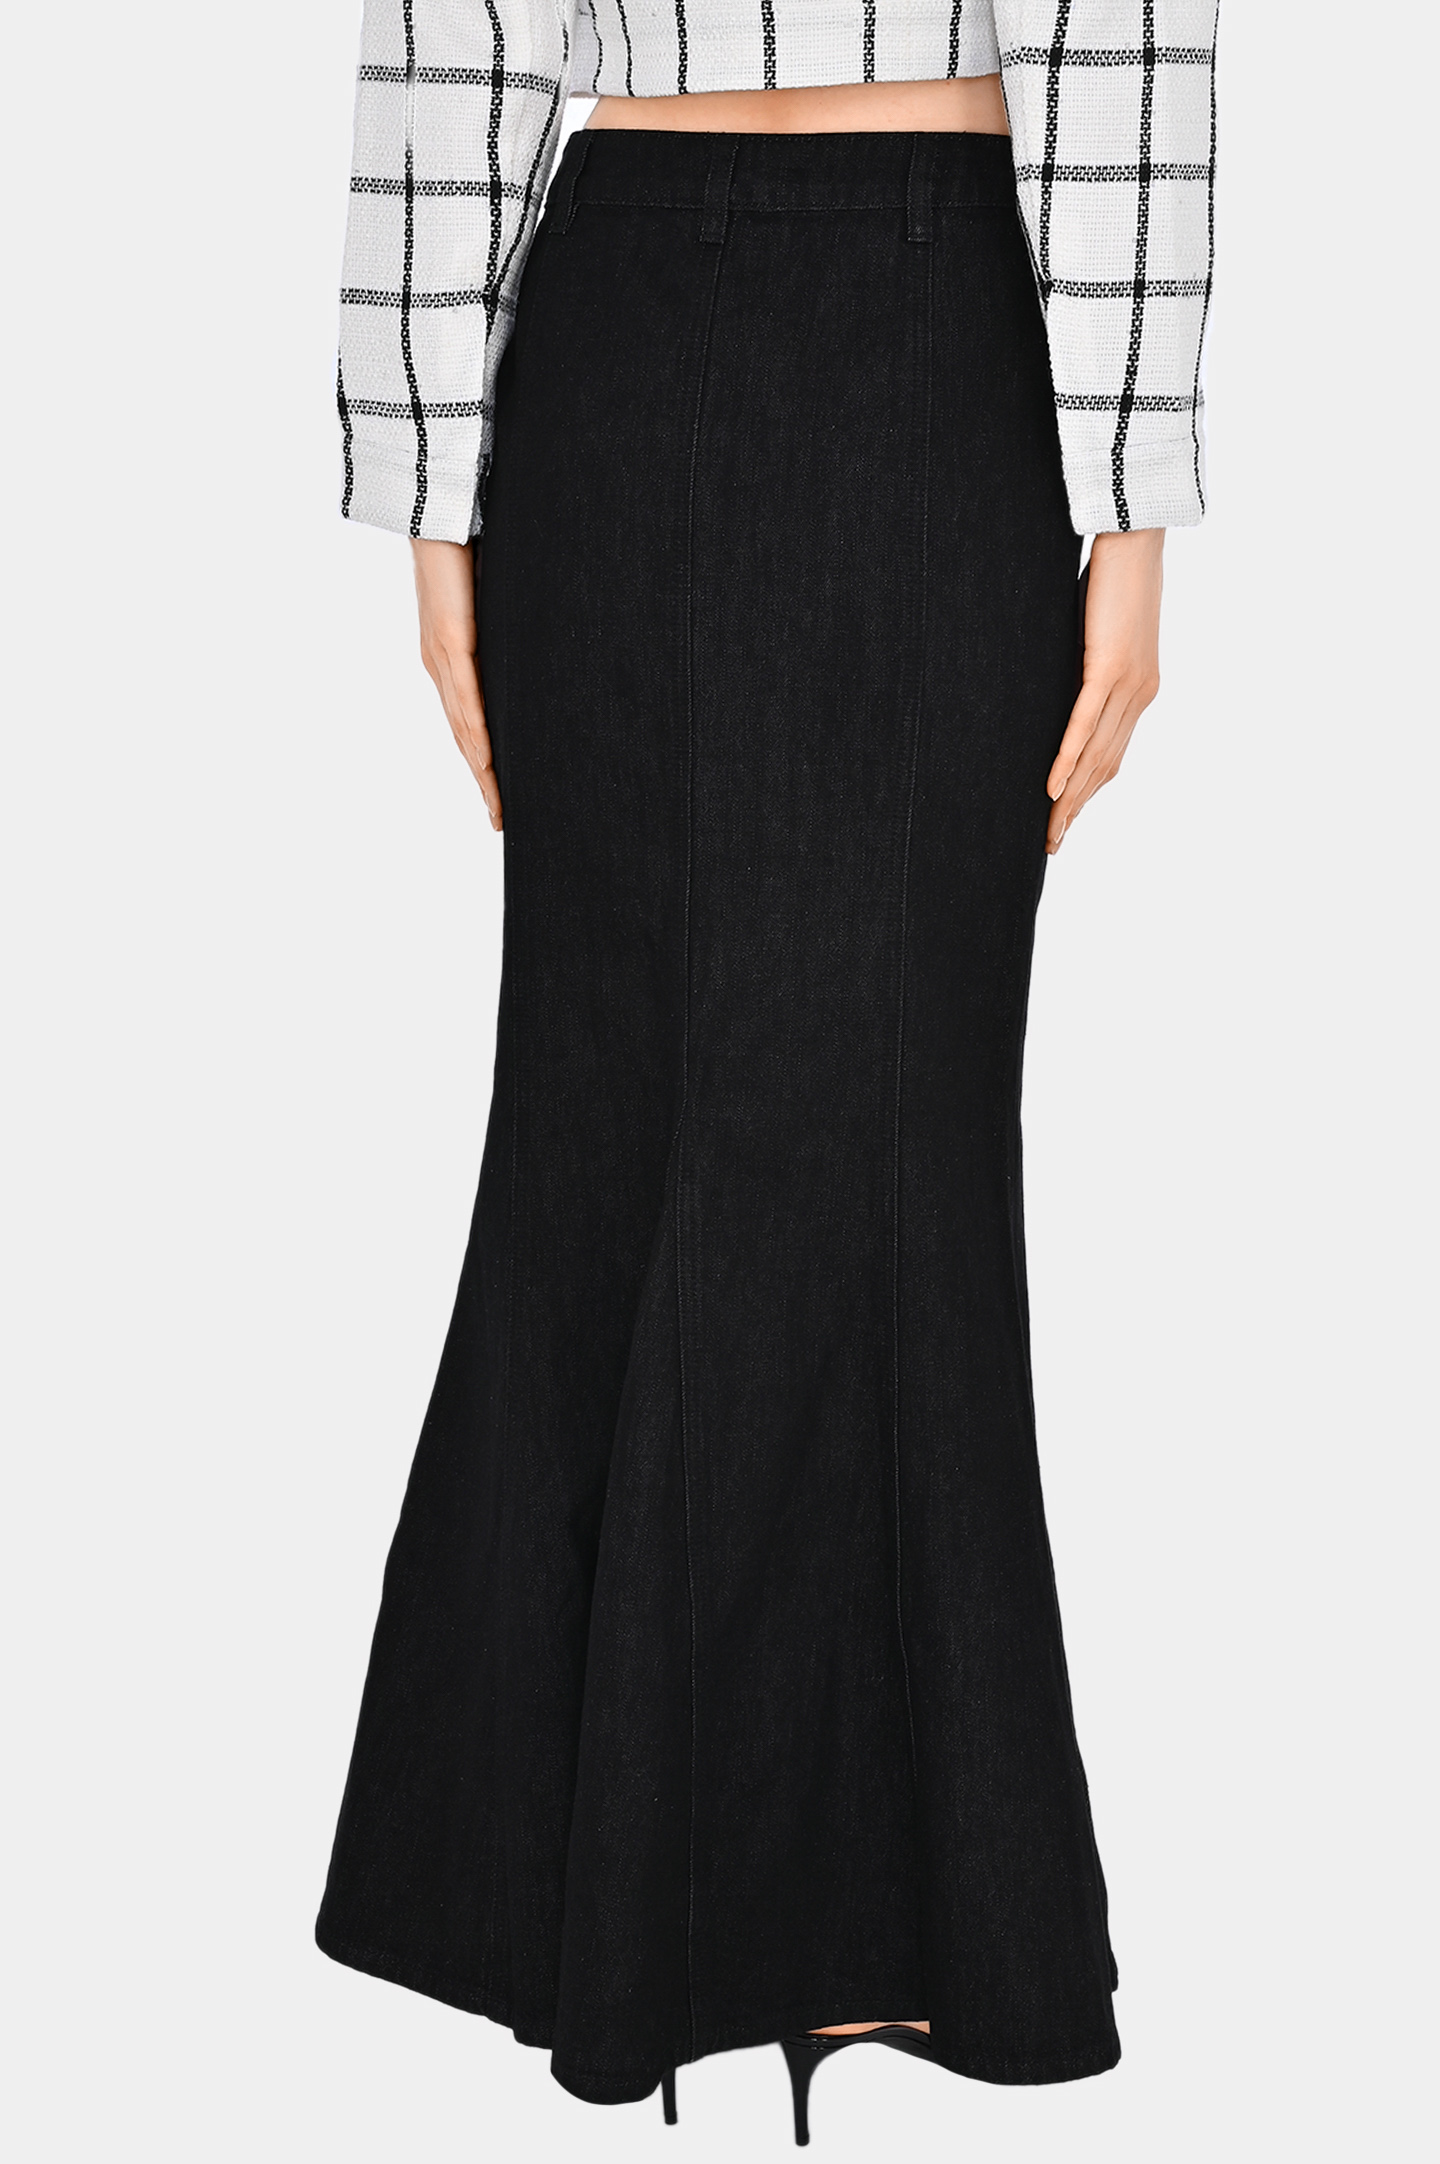 Джинсовая юбка с карманами SELF PORTRAIT RS24815XSKB, цвет: Черный, Женский